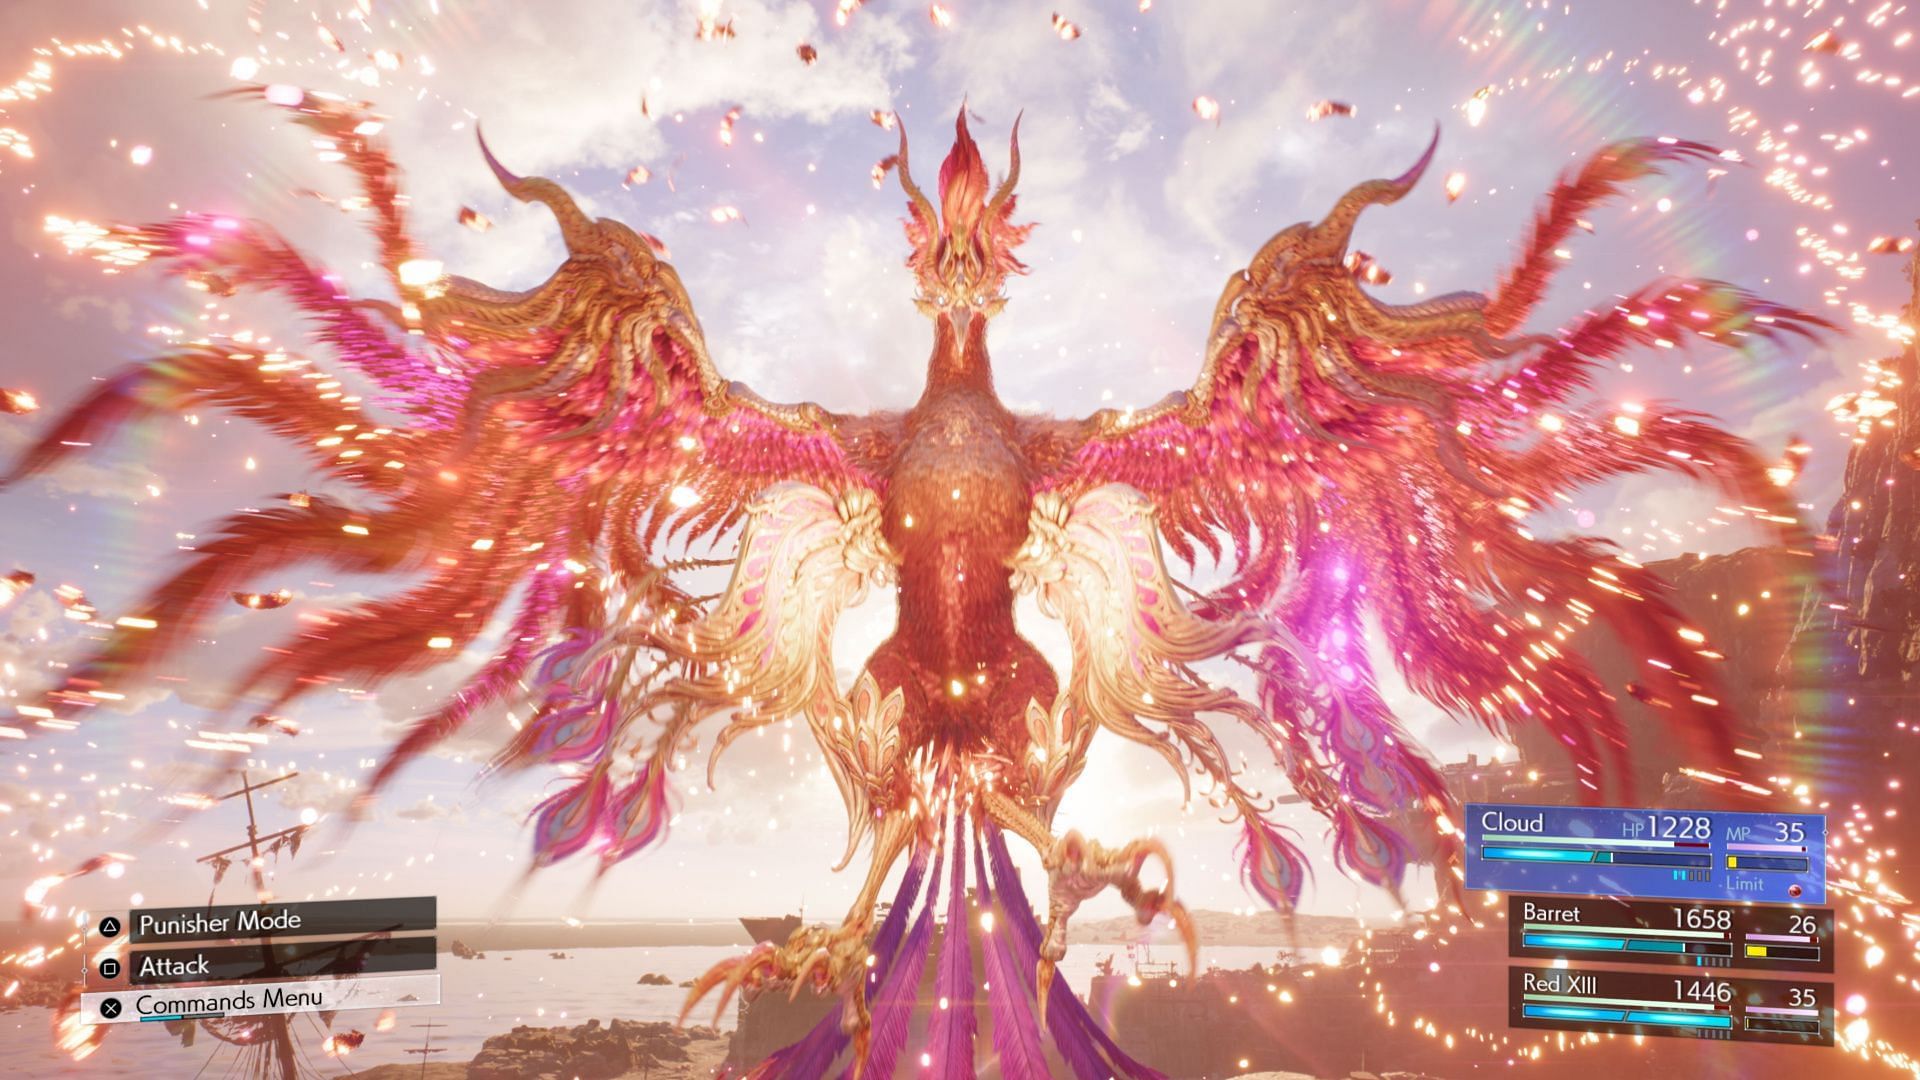 Boss battle against Phoenix in Final Fantasy 7 Rebirth